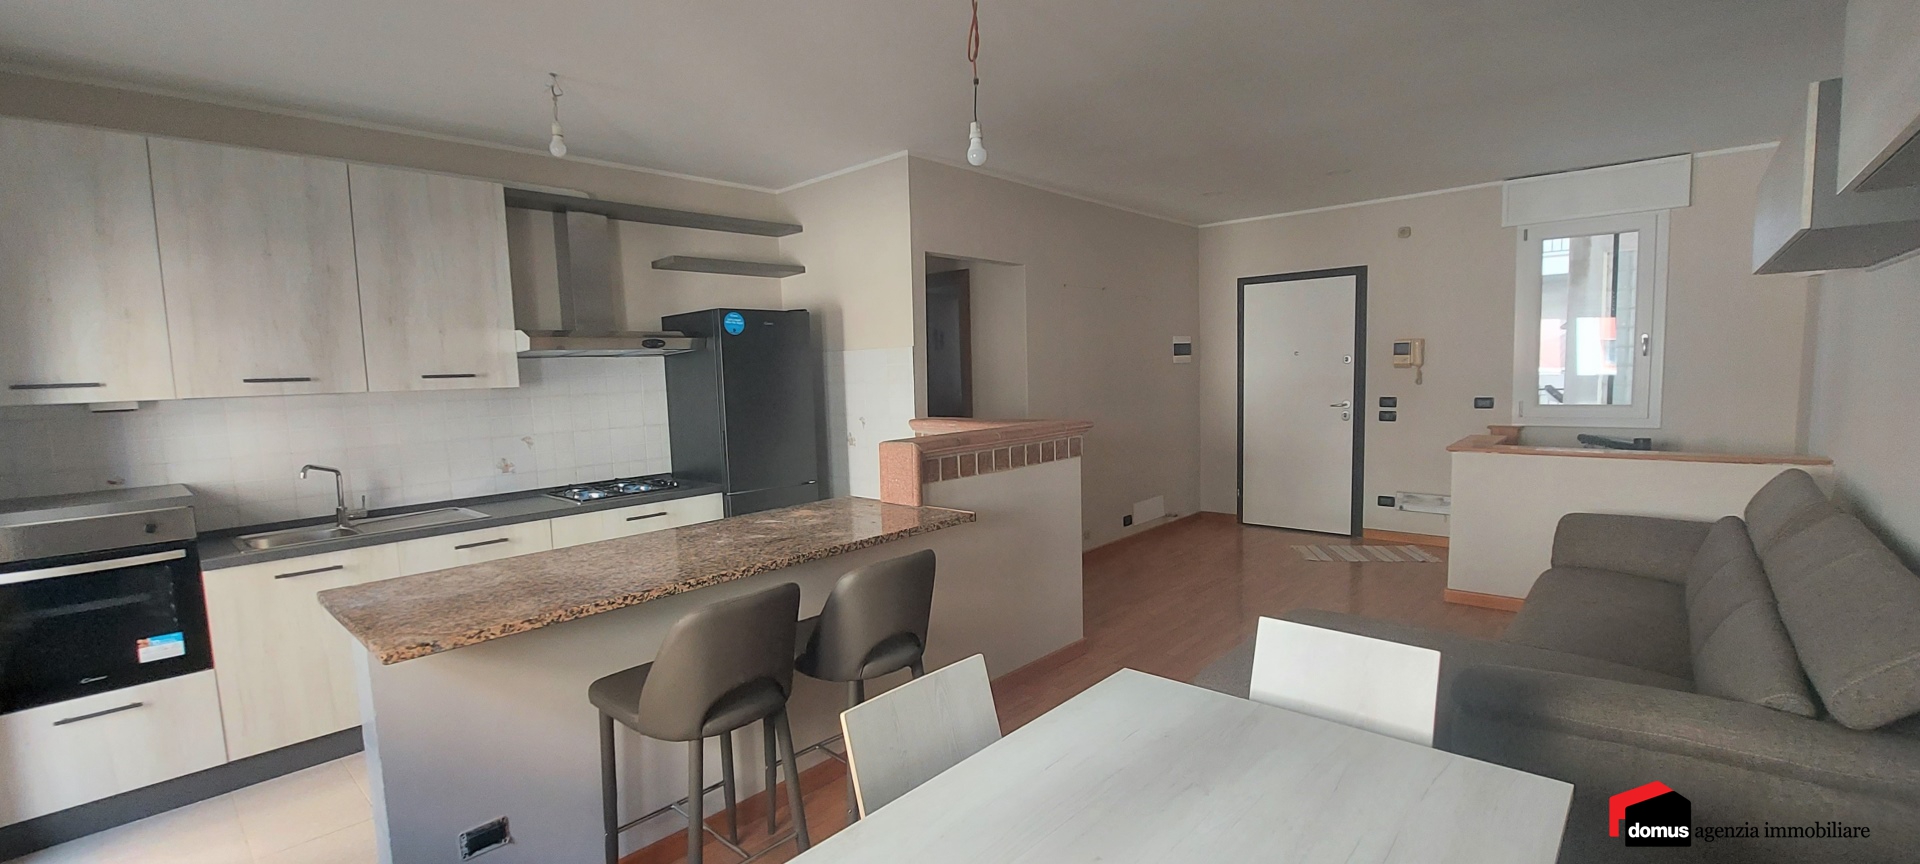 Appartamento in vendita a Caldogno, 6 locali, prezzo € 169.000 | PortaleAgenzieImmobiliari.it